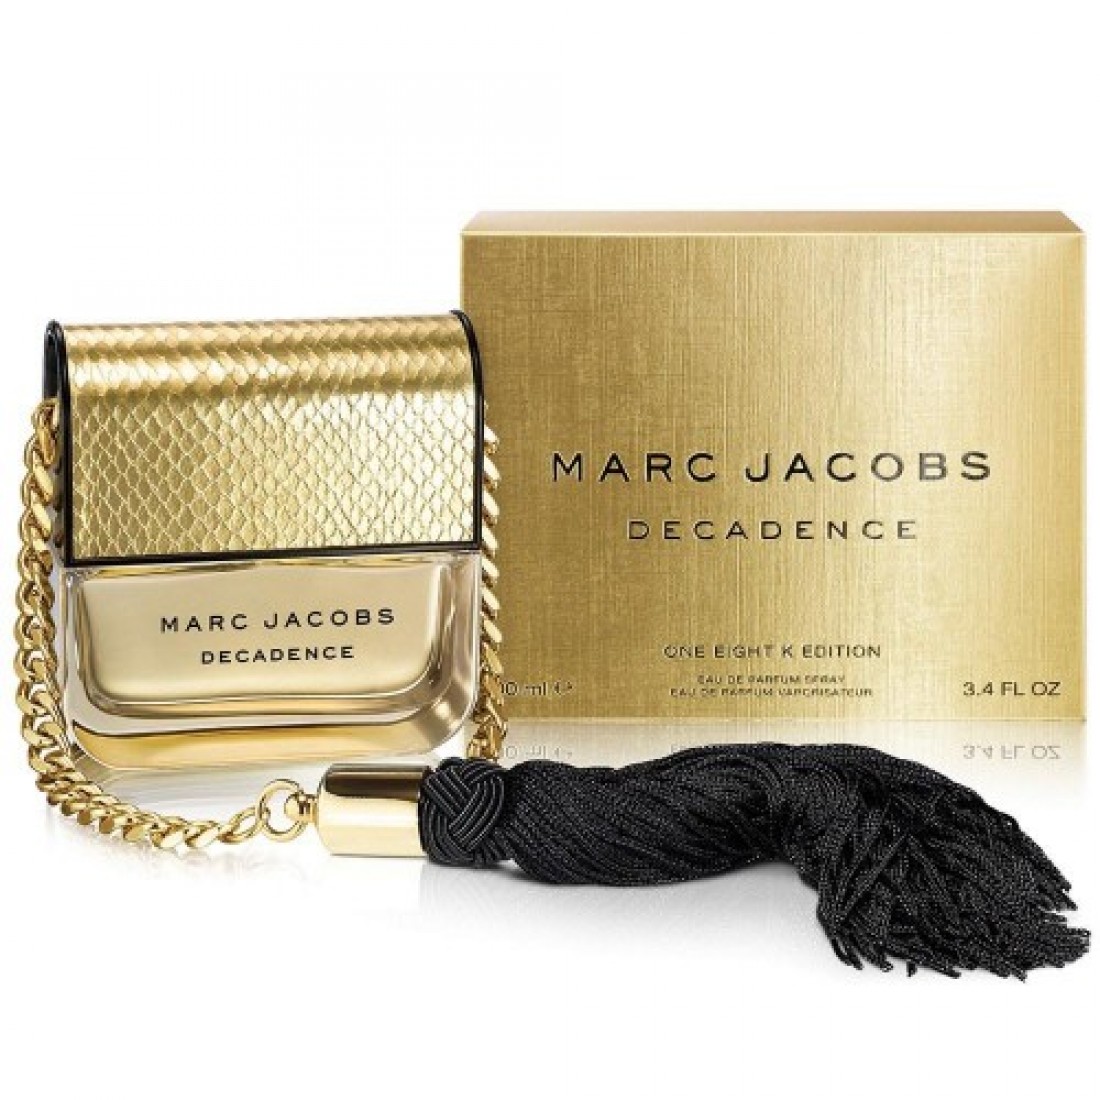 Marc jacobs decadence. Marc Jacobs Decadence one eight k Edition. Marc Jacobs Decadence клатч.